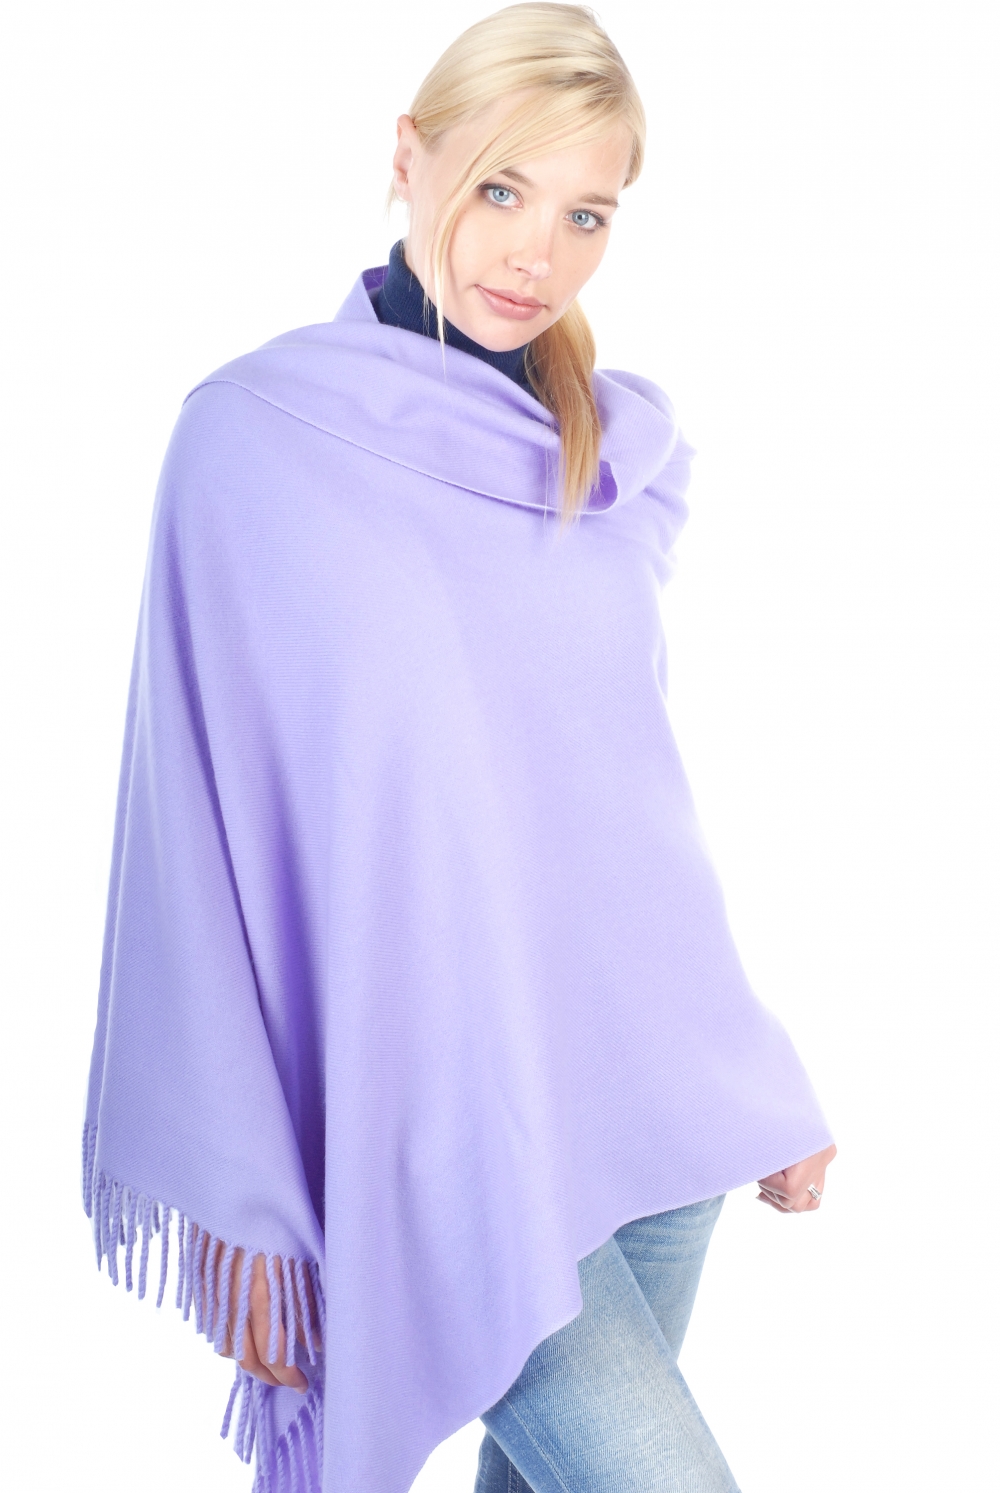 Cashmere accessori sciarpe foulard niry lavanda solare 200x90cm